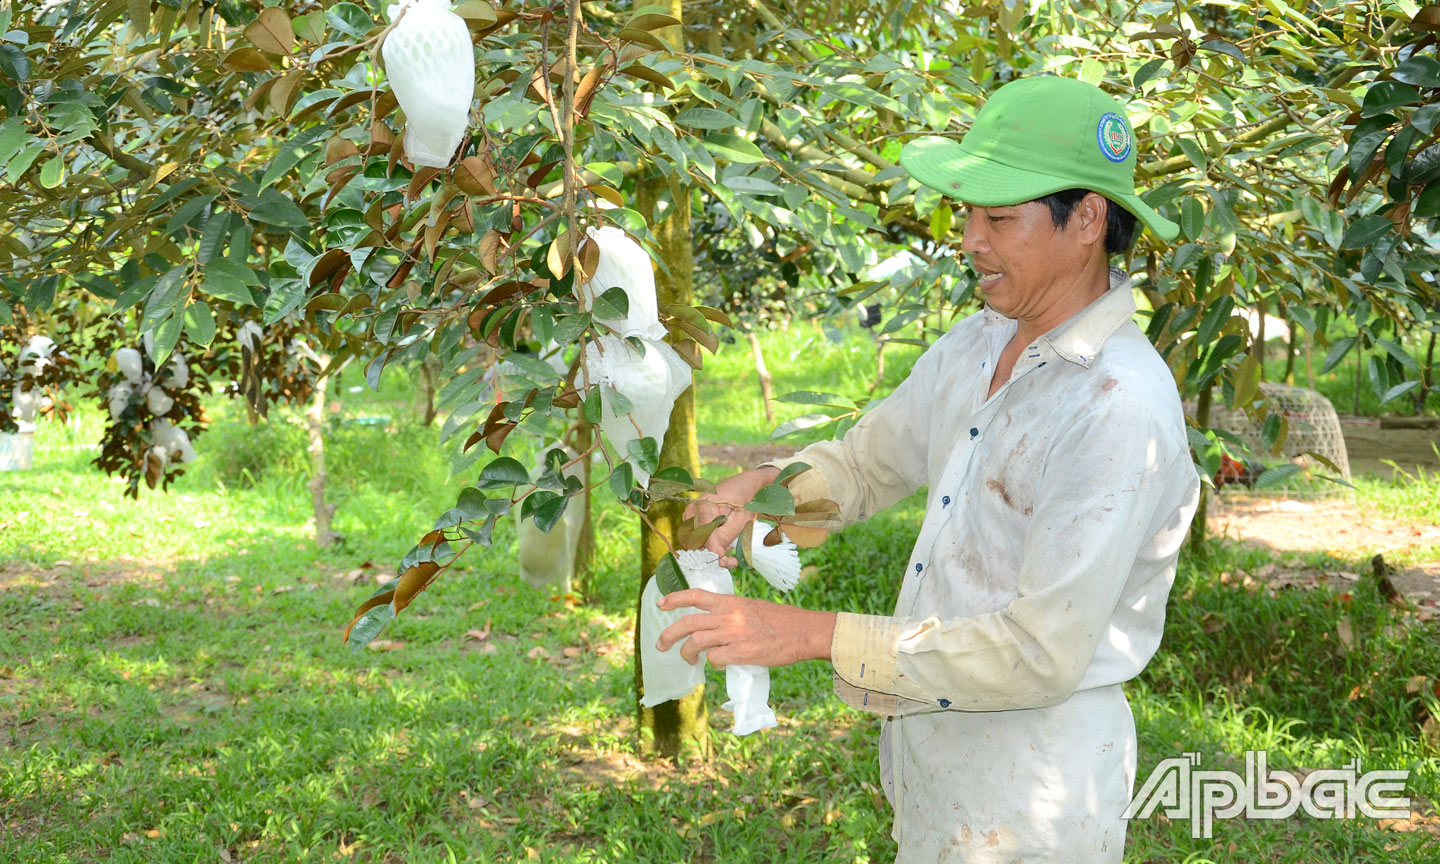  Hoạt động thu mua nông sản của nhiều HTX nông nghiệp trên địa bàn huyện Cái Bè đạt hiệu quả cao.